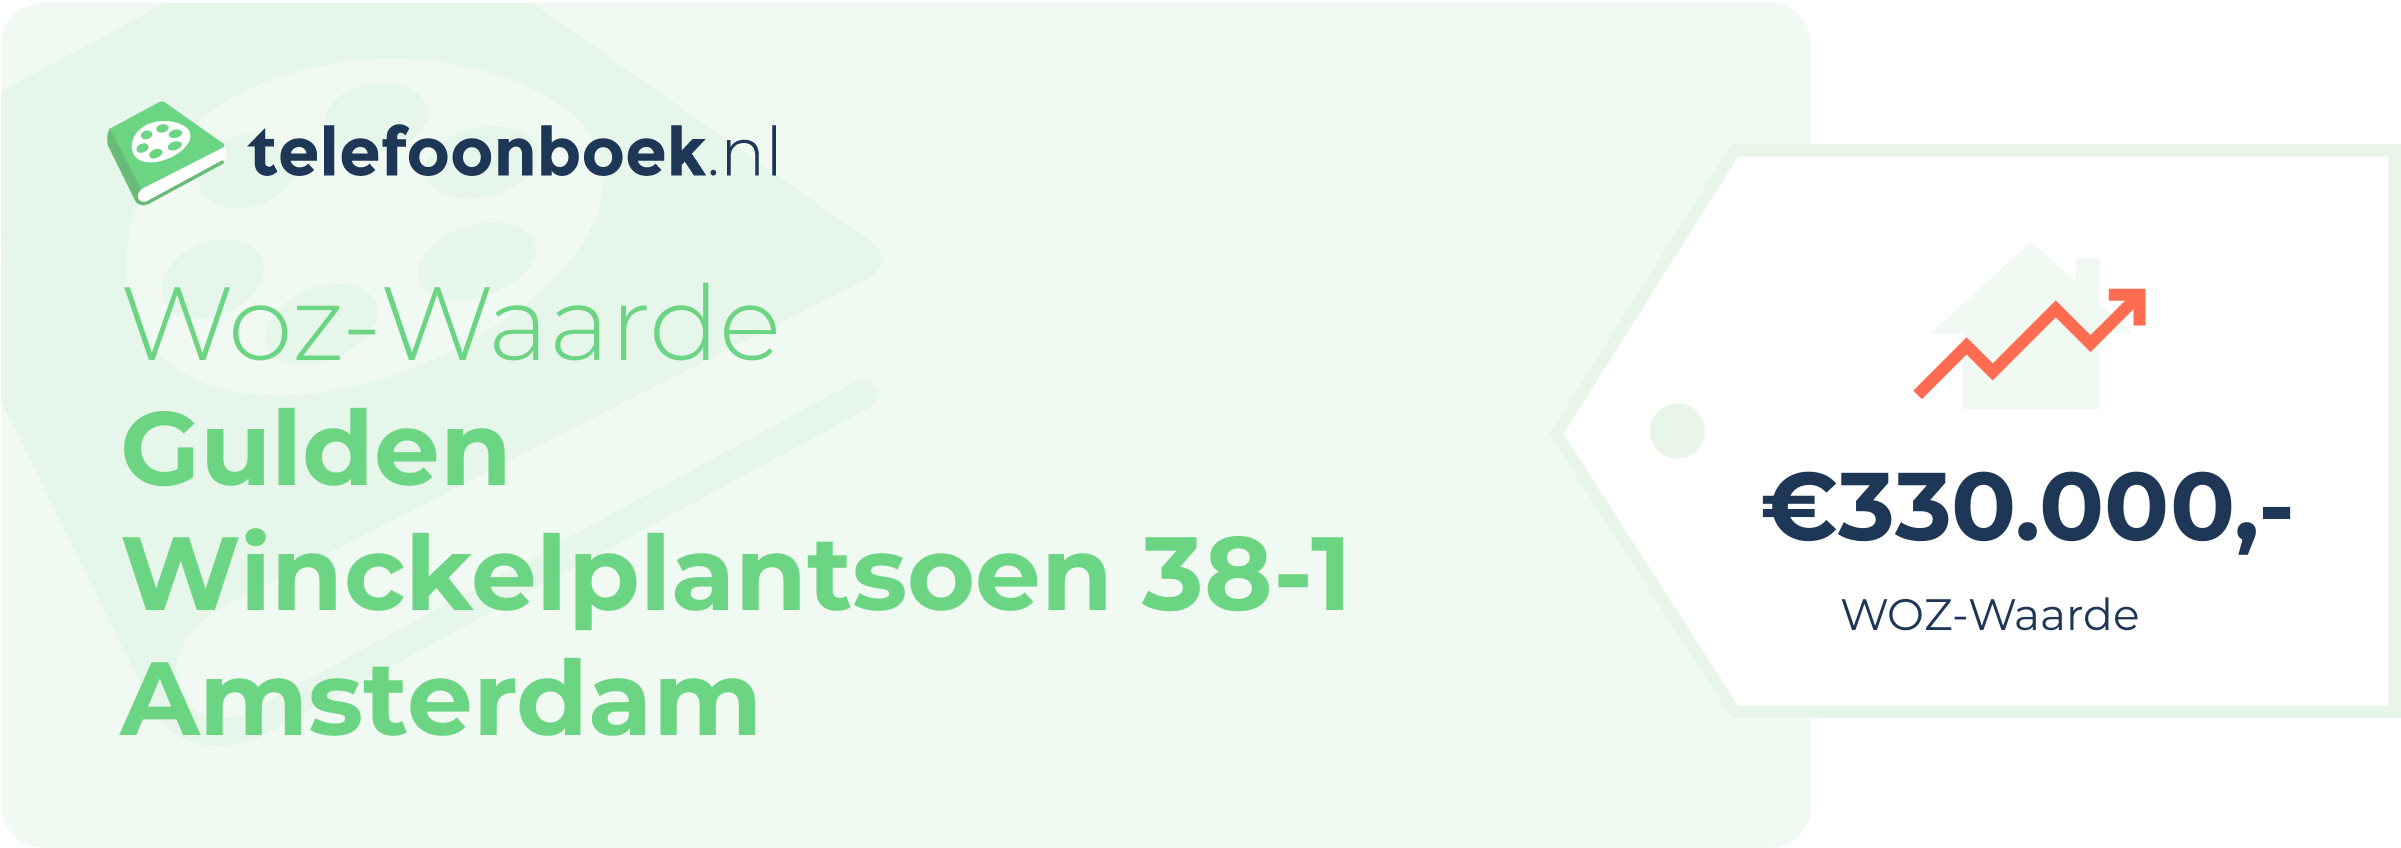 WOZ-waarde Gulden Winckelplantsoen 38-1 Amsterdam